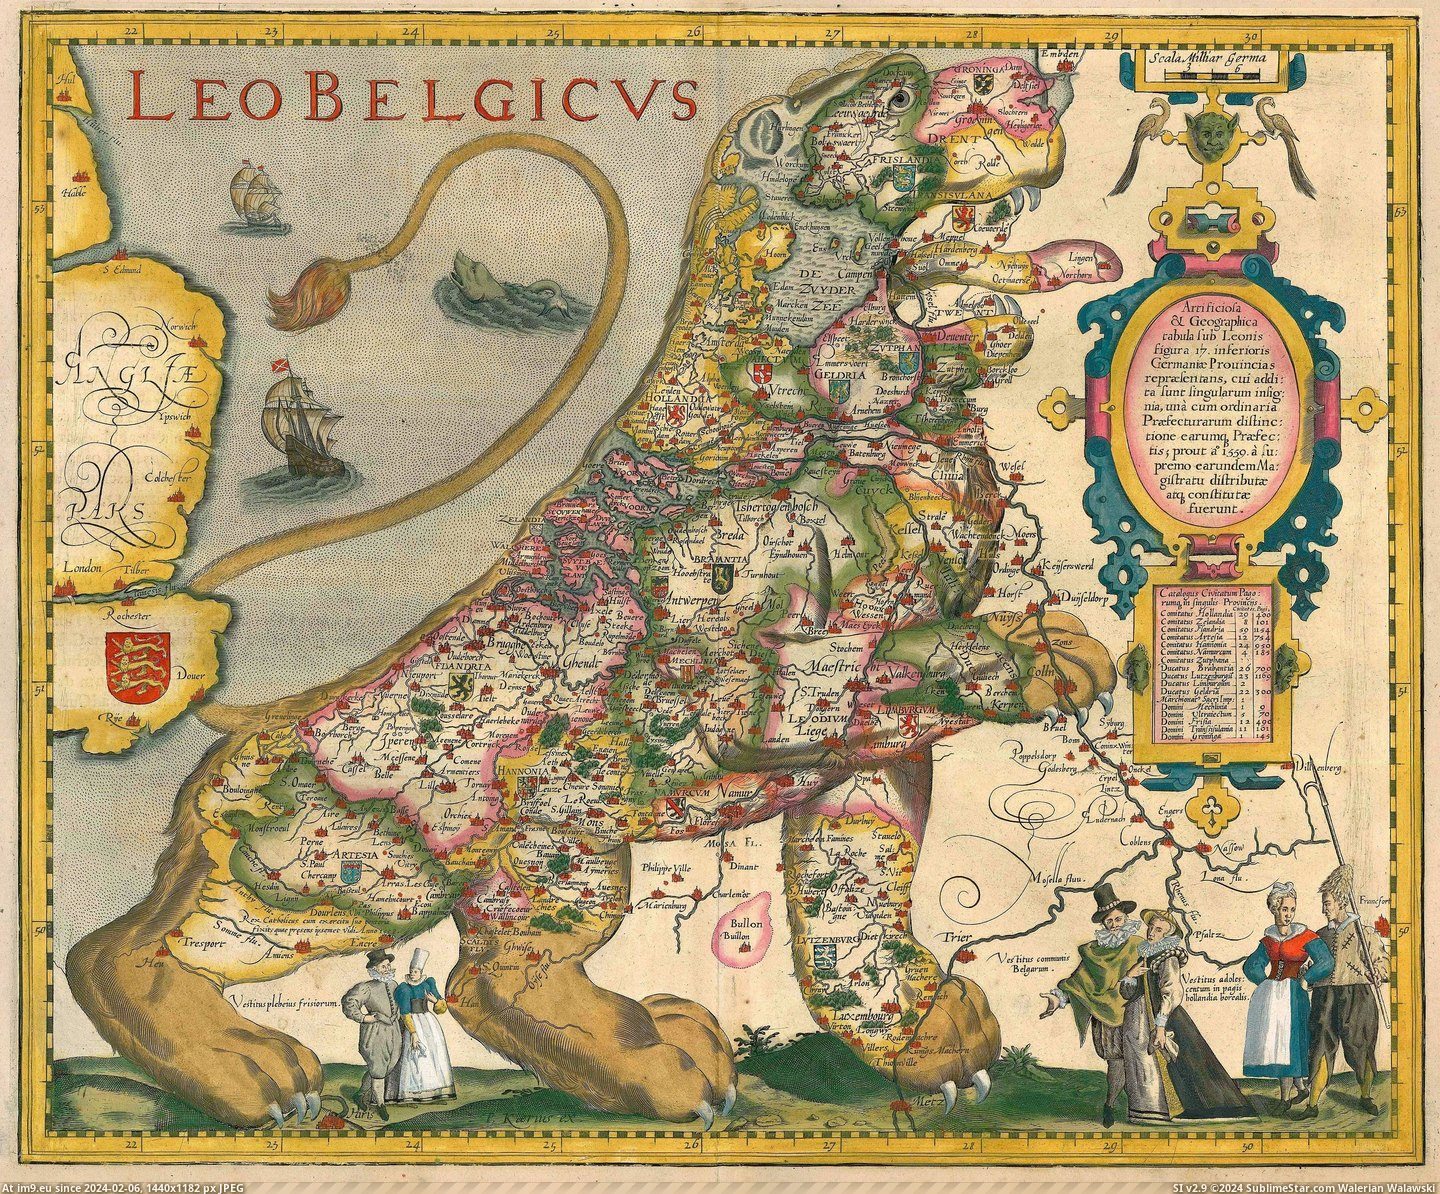 #Leo  #Belgicus [Mapporn] Leo Belgicus (3600x2967) Pic. (Bild von album My r/MAPS favs))